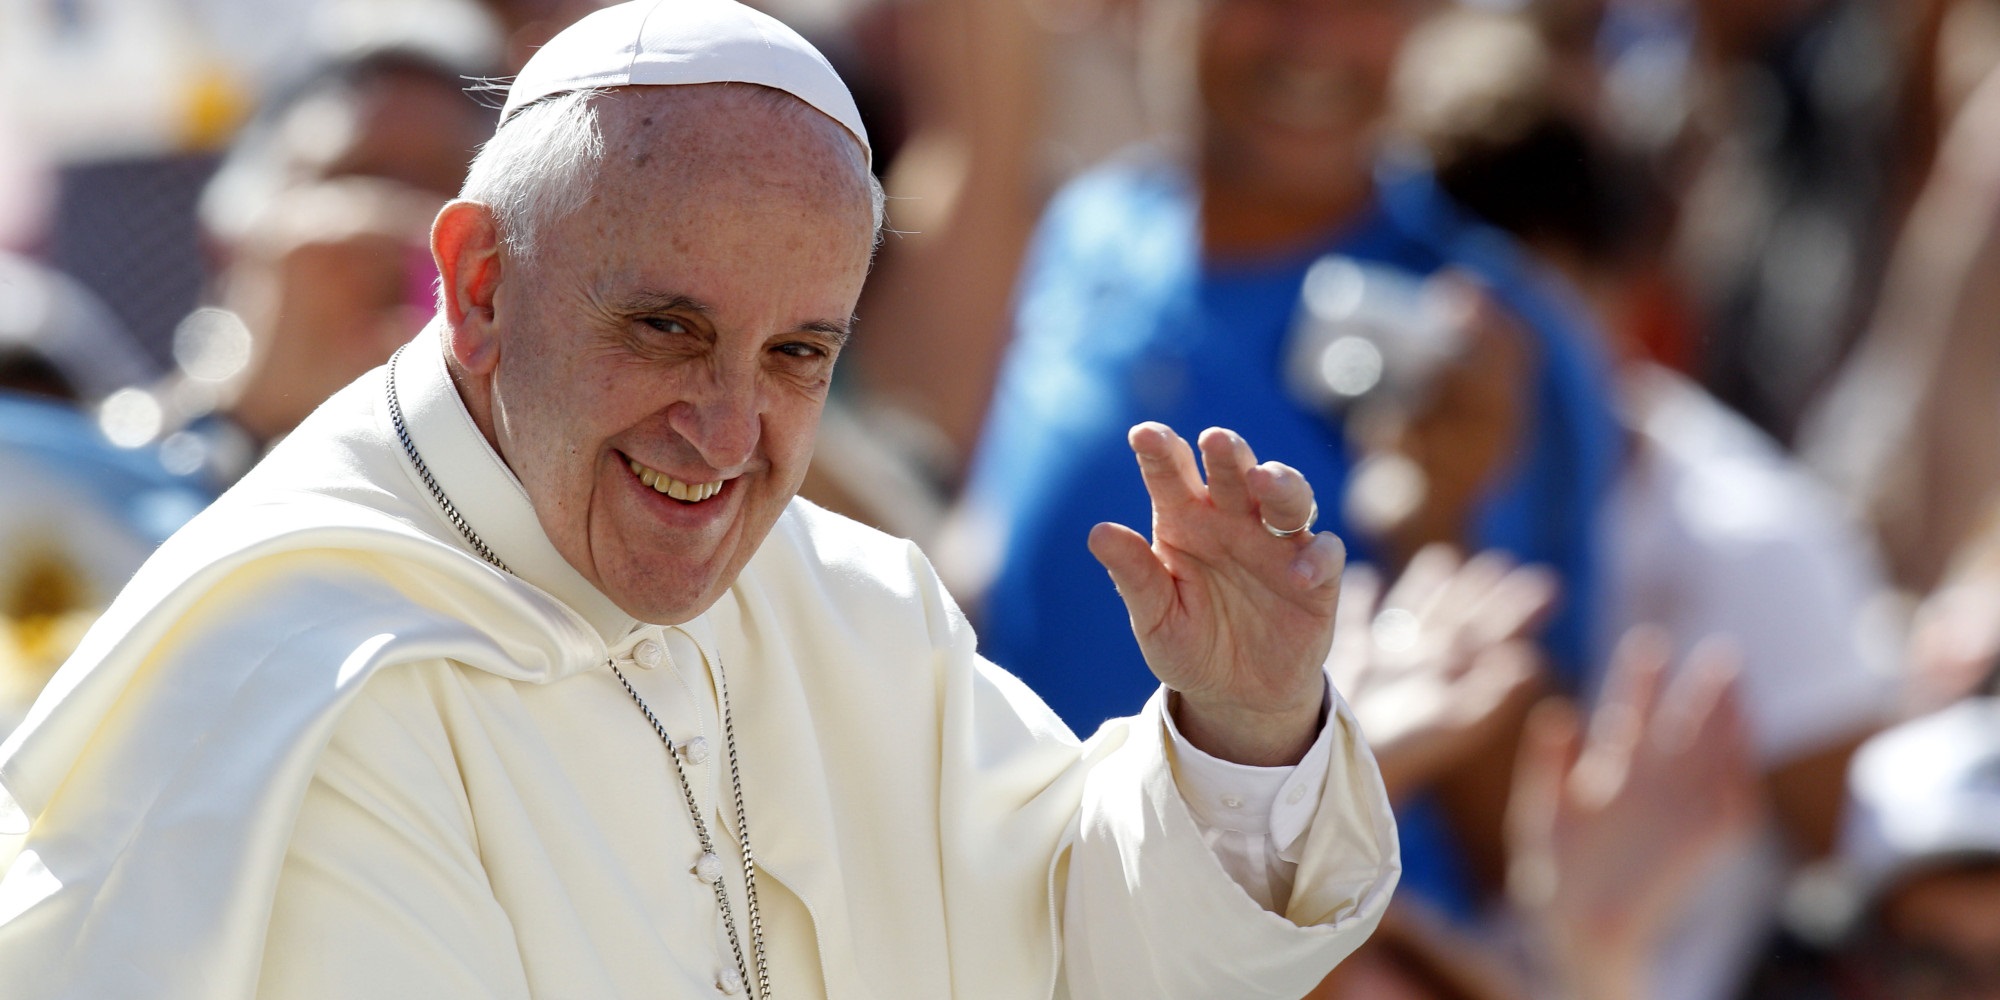 Saiba como assistir a uma audiência papal no Vaticano